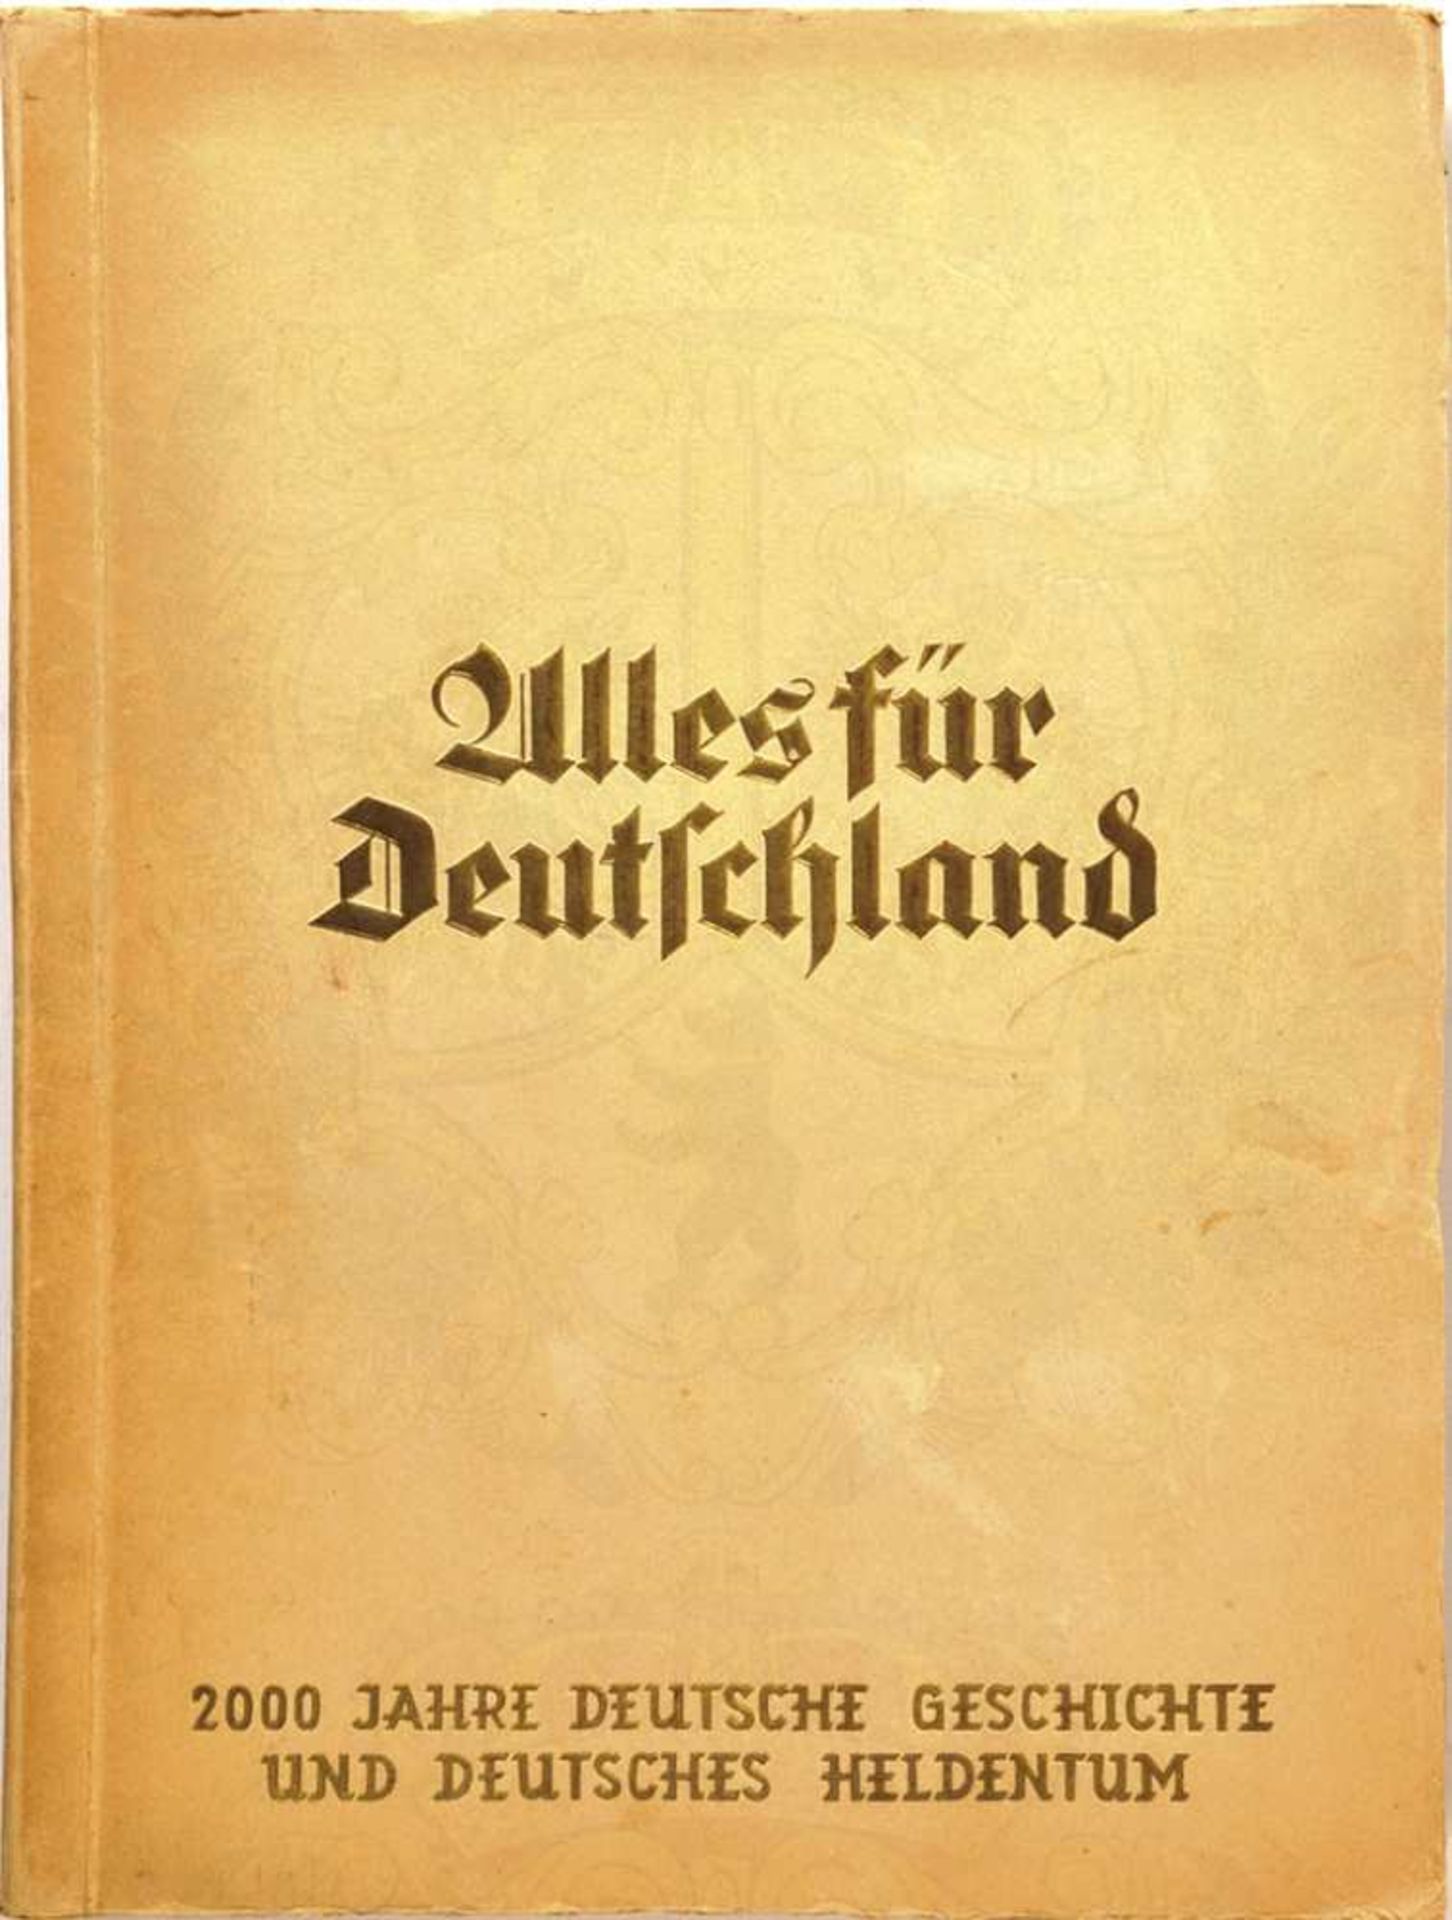 ALLES FÜR DEUTSCHLAND, "2000 Jahre deutsche Geschichte und deutsches Heldentum", Bremen, "Yosma",